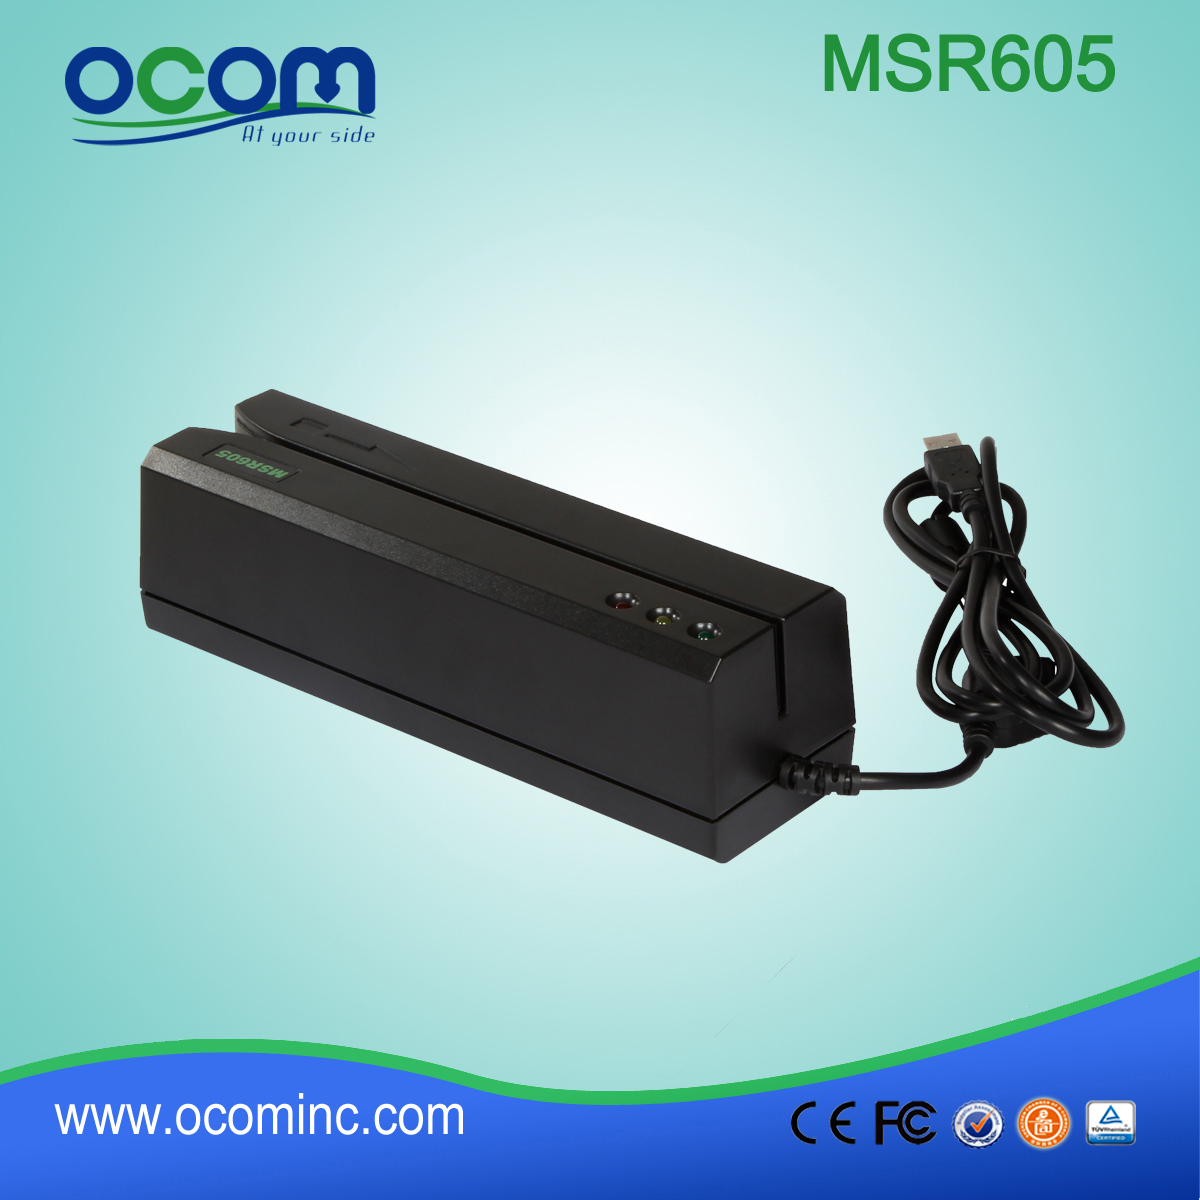 (MSR605) Chiny wykonane mini czytnik kart i writter RS232, czytnik kart USB i writter